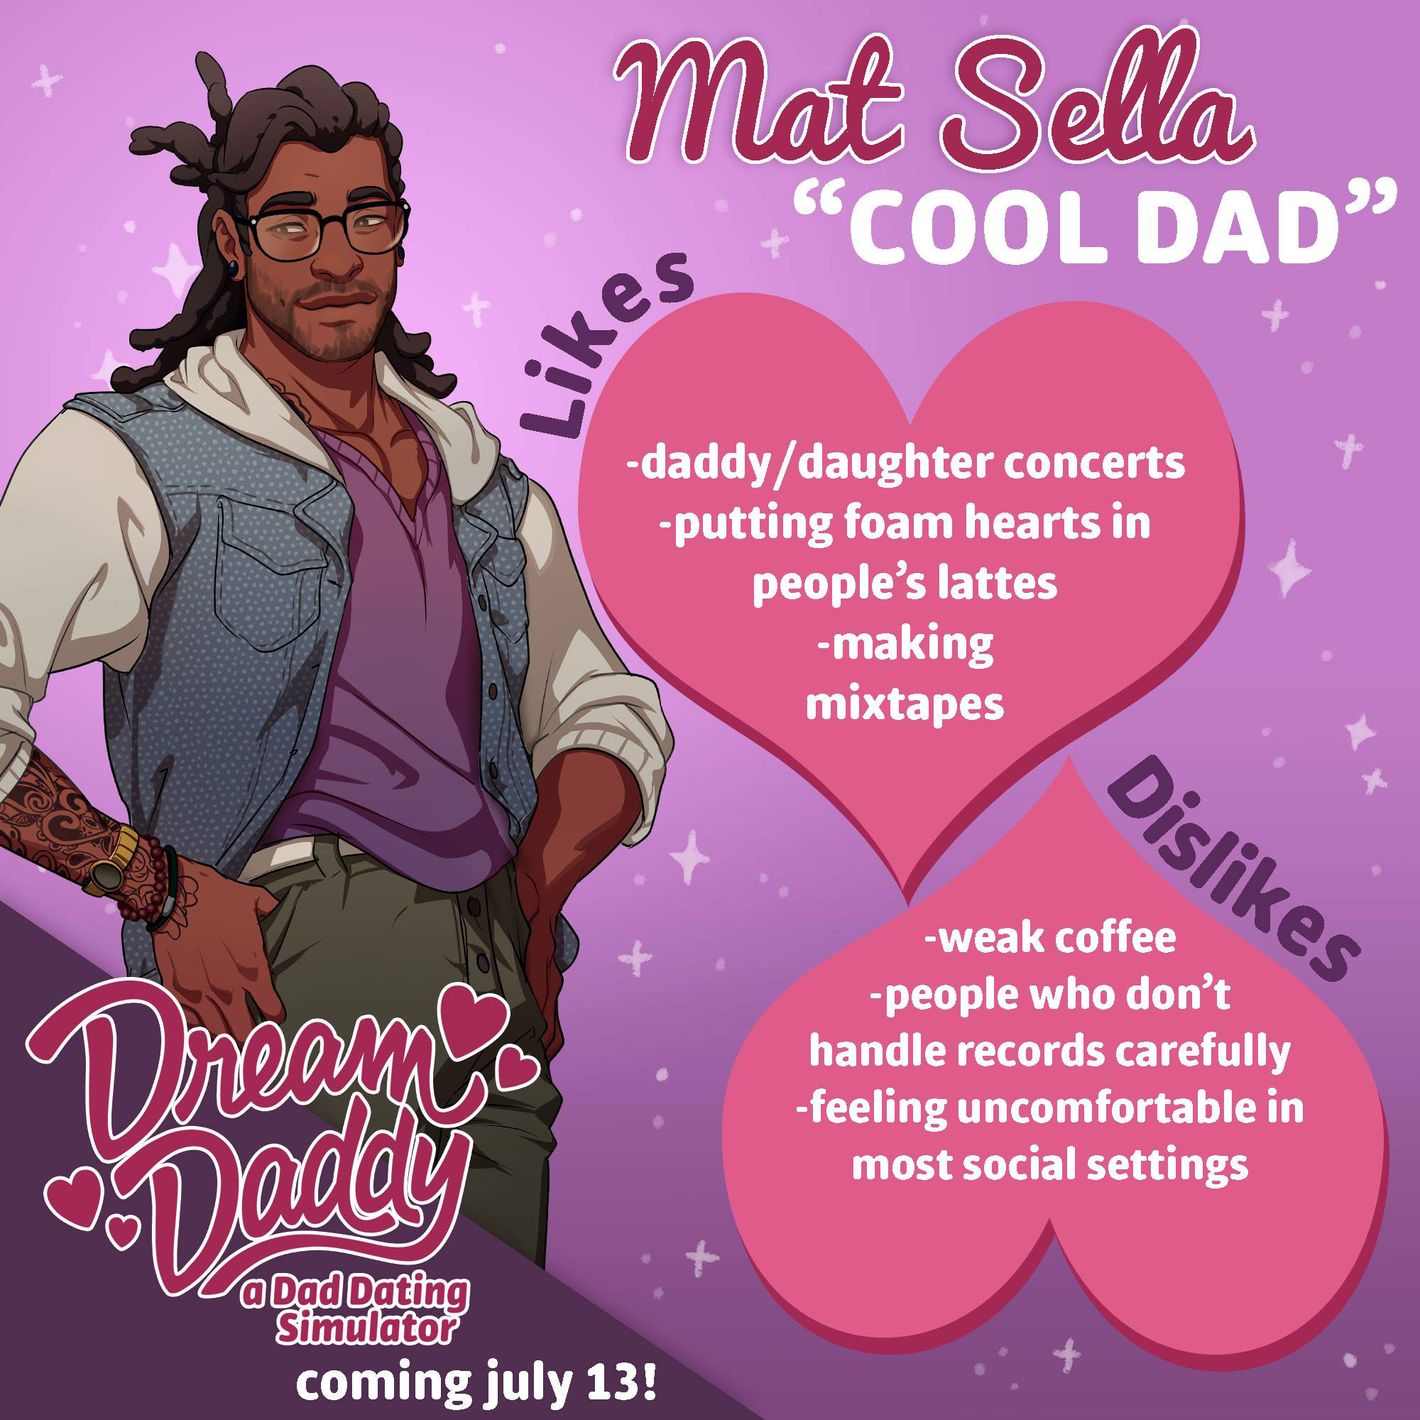 Dream dating. Dream Daddy Мэтт. Dream Daddy описание. Dream Daddy игра.